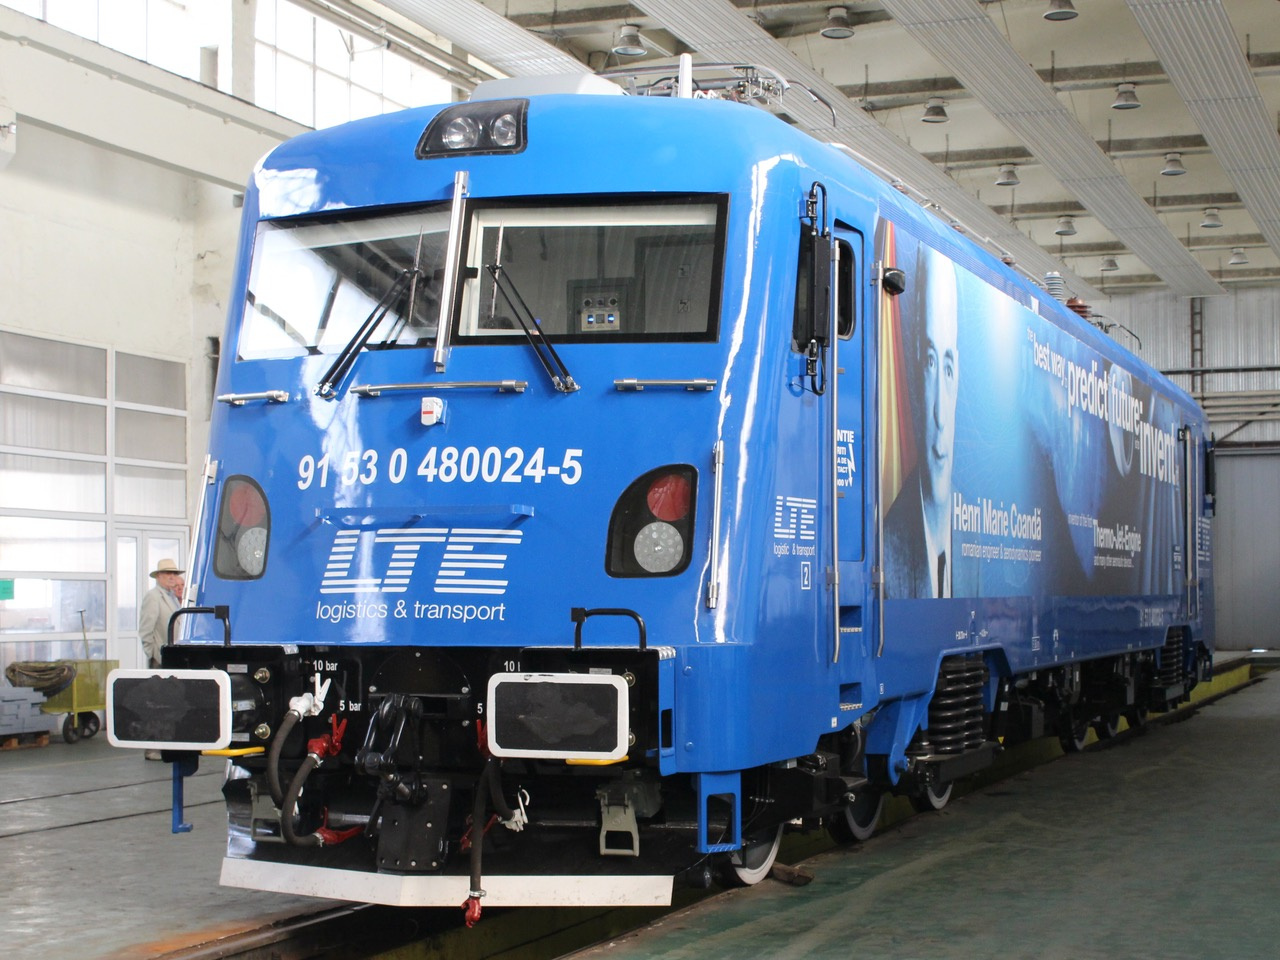 A CFR Alstom Coradia motorvonatai lesznek a legmodernebb vasúti járművek Romániában. Mindössze négy darab áll forgalomba ez év őszén, még legalább 200 kellene belőle